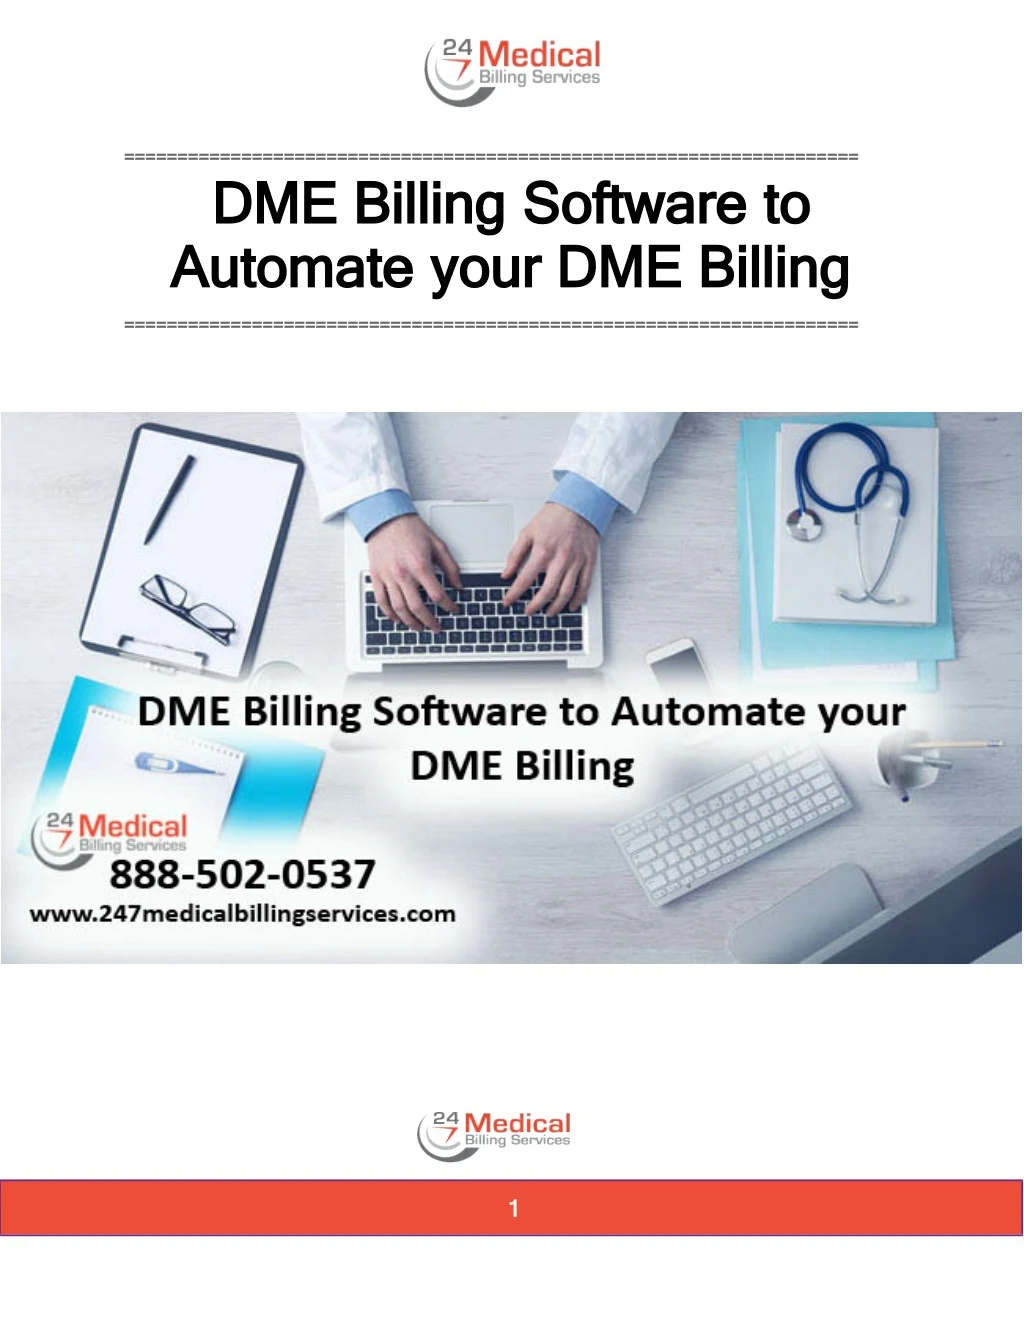 dme dme billing billing software automate